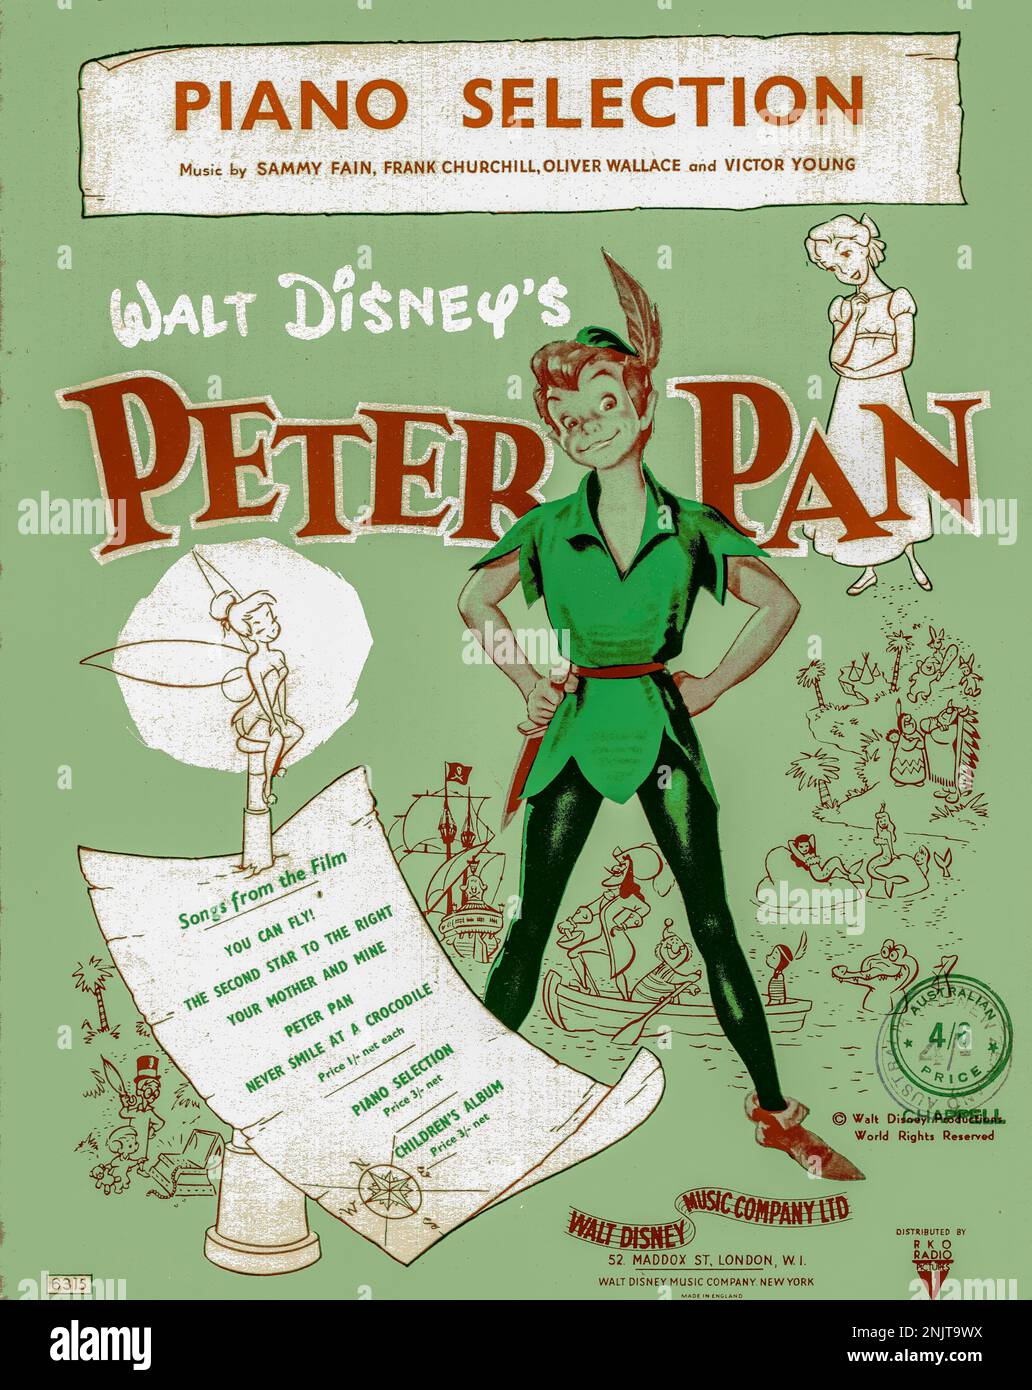 Ein gescanntes Bild einer Klavierauswahl aus dem Peter-Pan-Film von Walt Disney aus dem Jahr 1953. Dieses Dokument wurde in Australien verkauft und in der britischen Währung vor 1966 verkauft Stockfoto